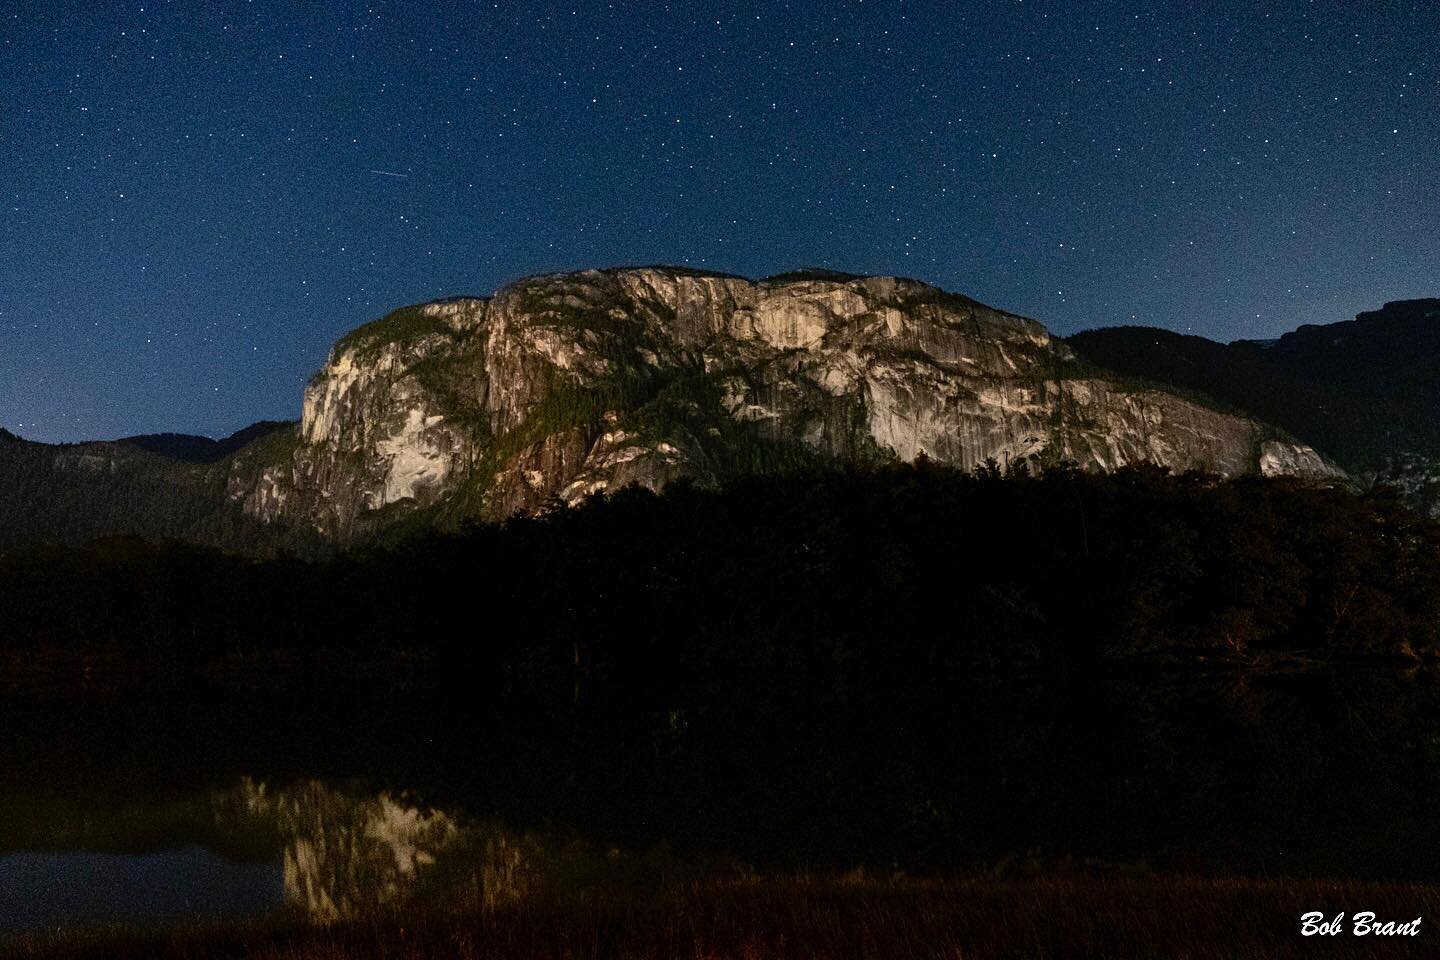 Stawamus Chief/Night View - #stawamuschief #thechief #granitemonalith #legendarymountainface #longexposure #timeexposure #nightlitscene #starrylandscape #stars #FujiXT2. #fujilovers